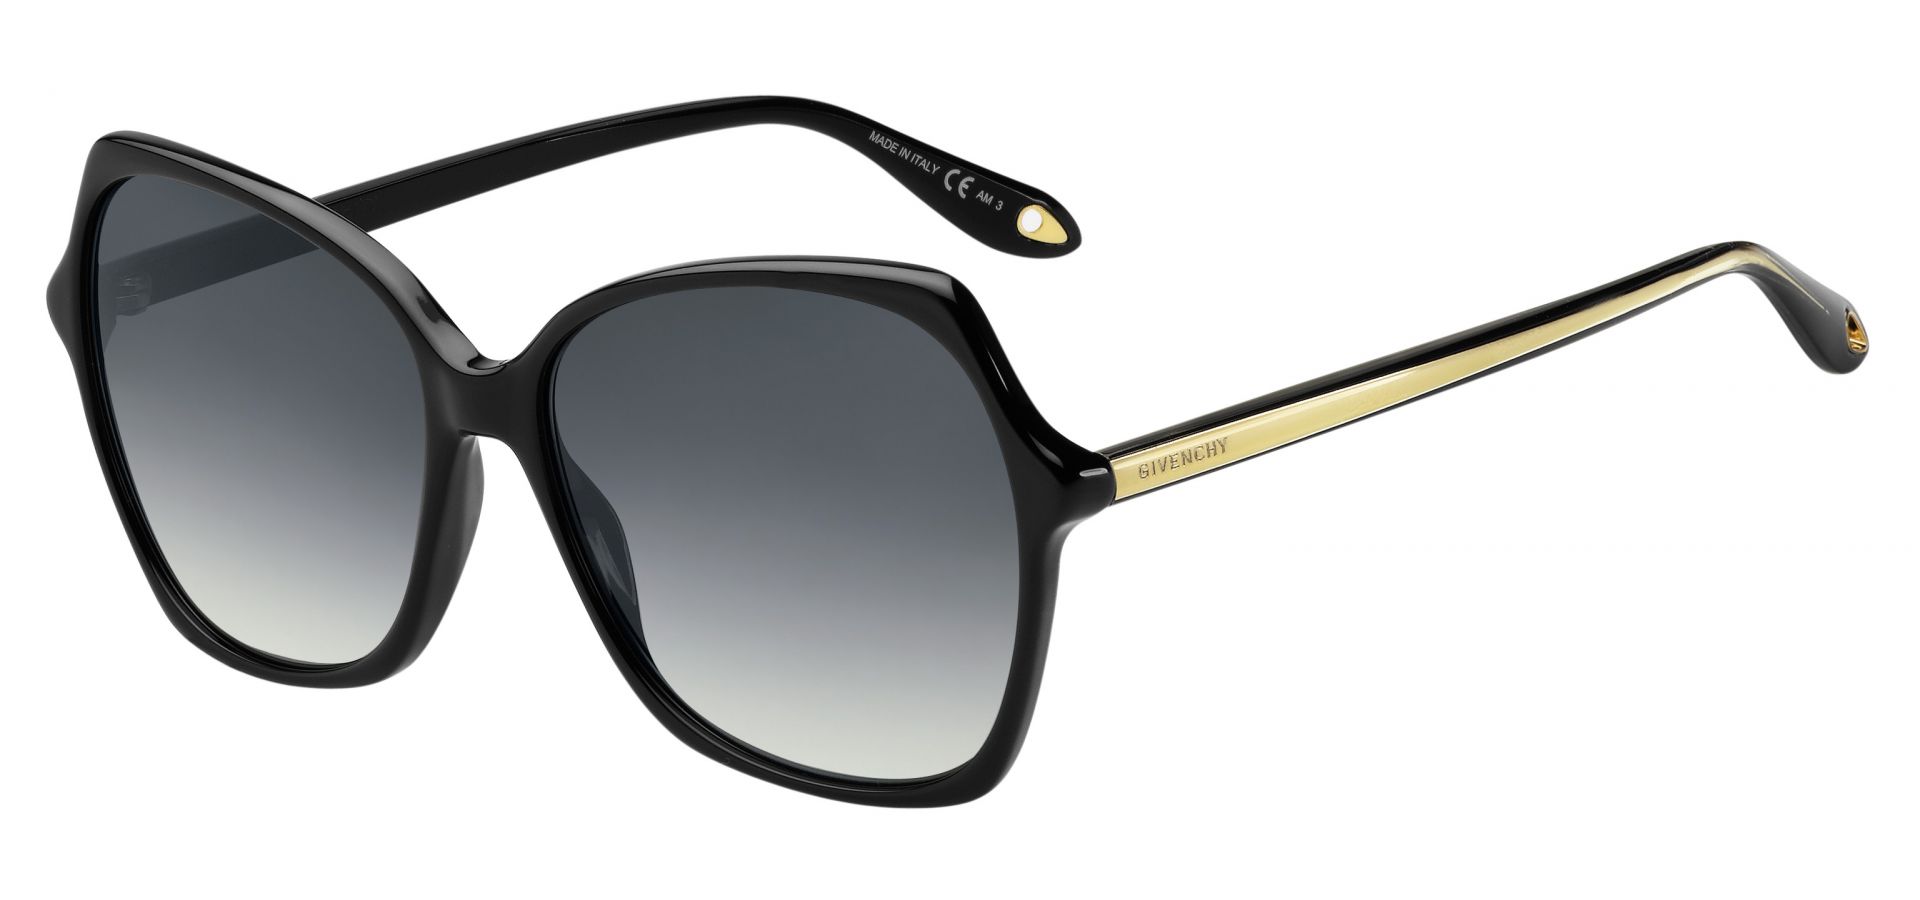 Sončna očala Givenchy GV7094: Barva: črna, Velikost: 59/15/145, Spol: ženska, Material: acetat